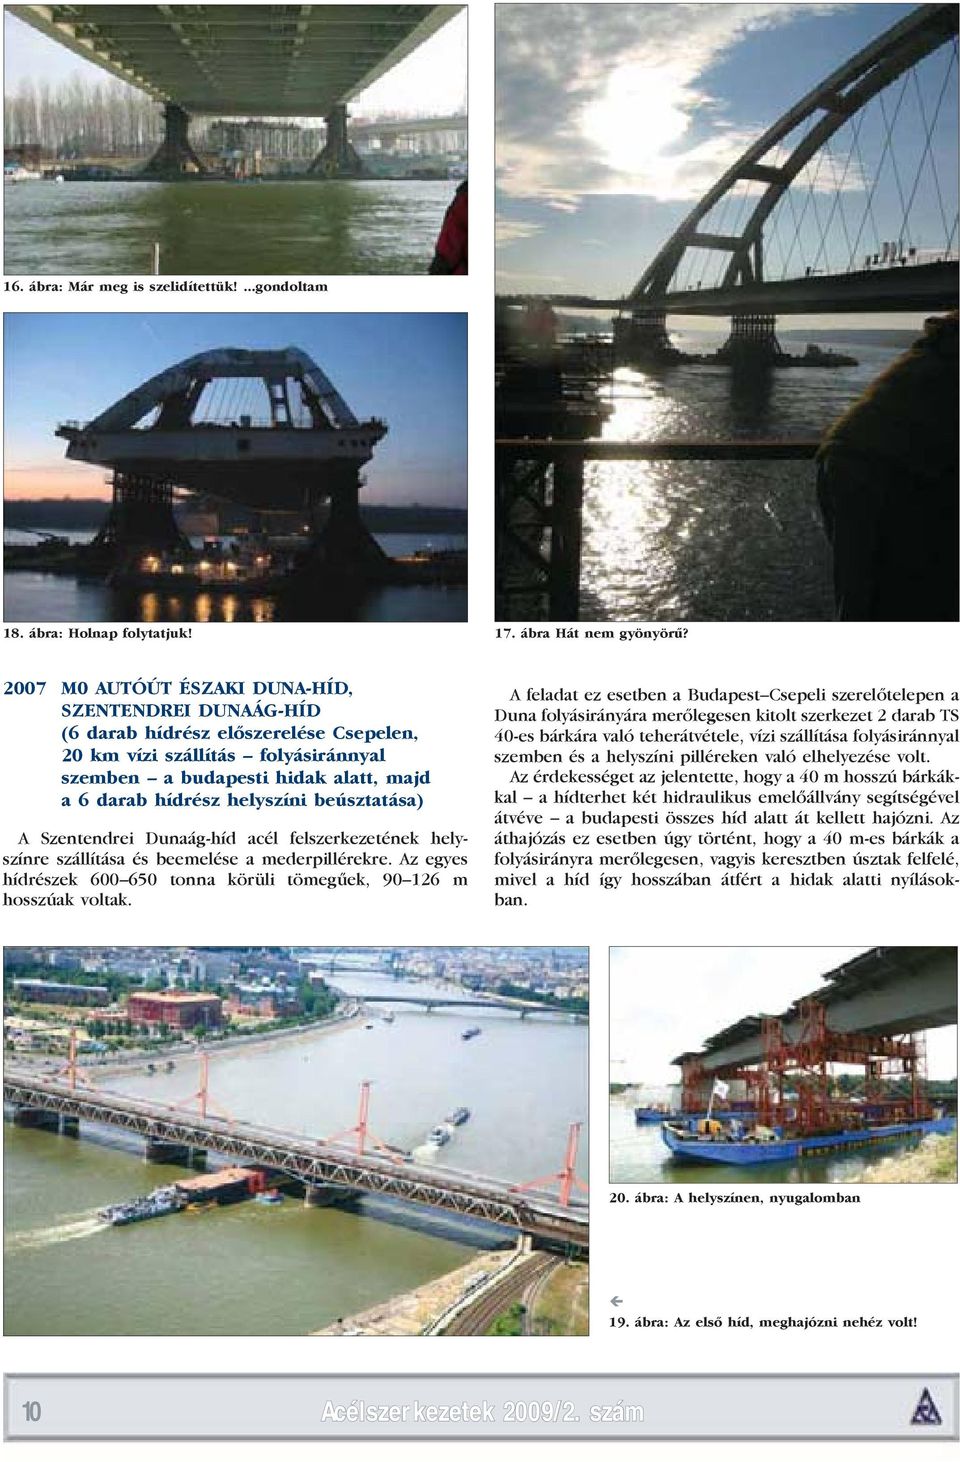 beúsztatása) A Szentendrei Dunaág-híd acél felszerkezetének helyszínre szállítása és beemelése a mederpillérekre. Az egyes hídrészek 600 650 tonna körüli tömegűek, 90 126 m hosszúak voltak.